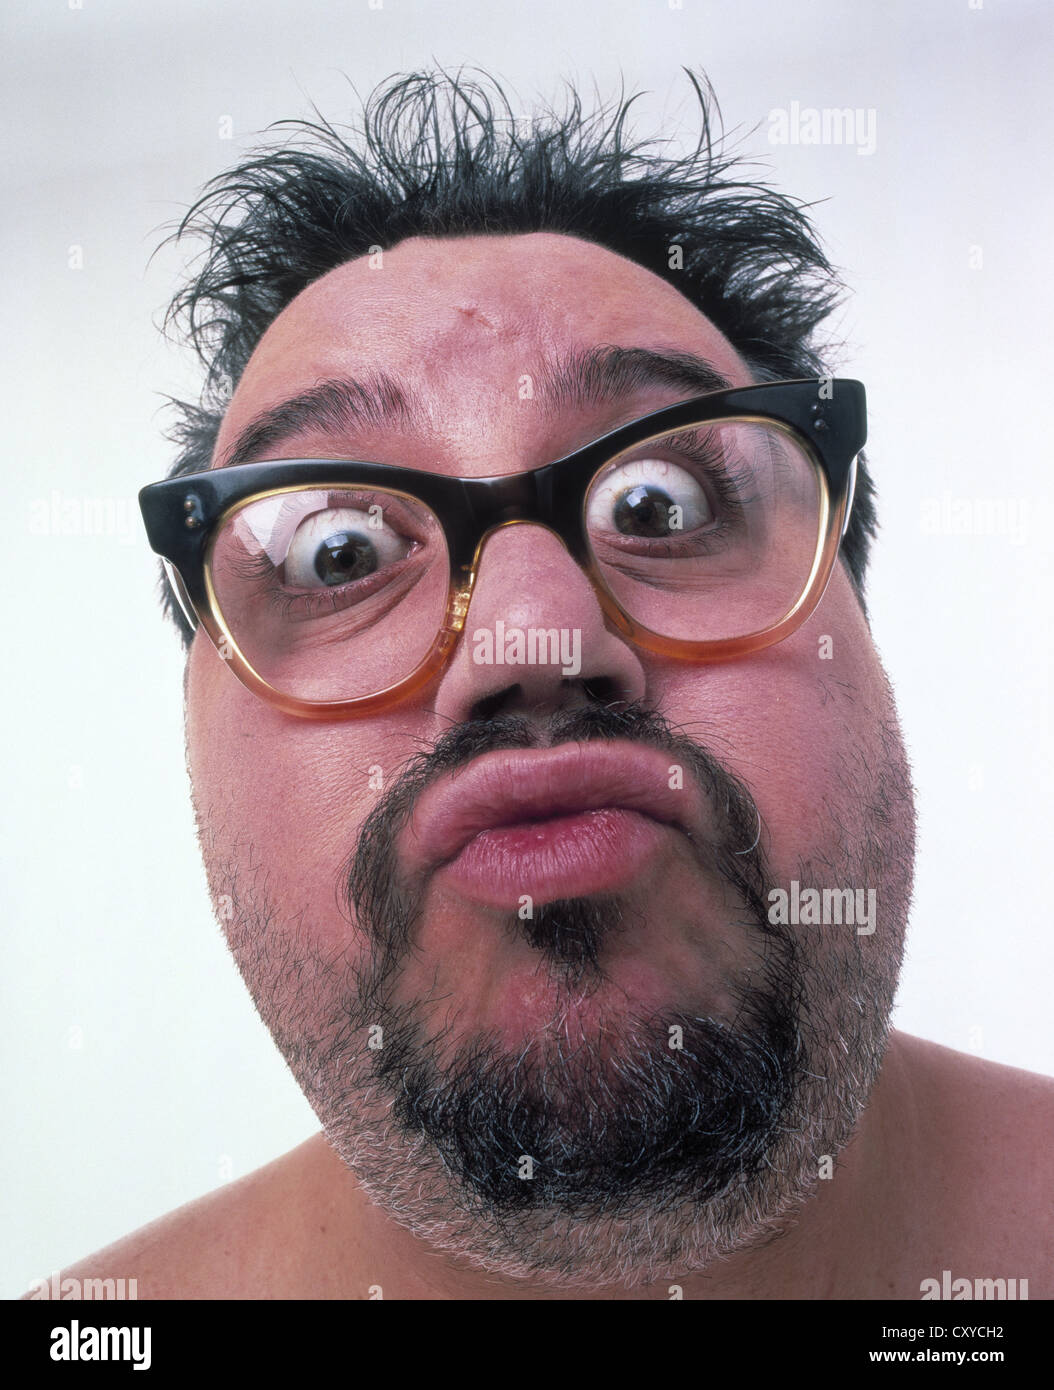 hombre-gordo-de-mediana-edad-con-gafas-unshaved-con-una-cara-de-sorpresa-cxych2.jpg